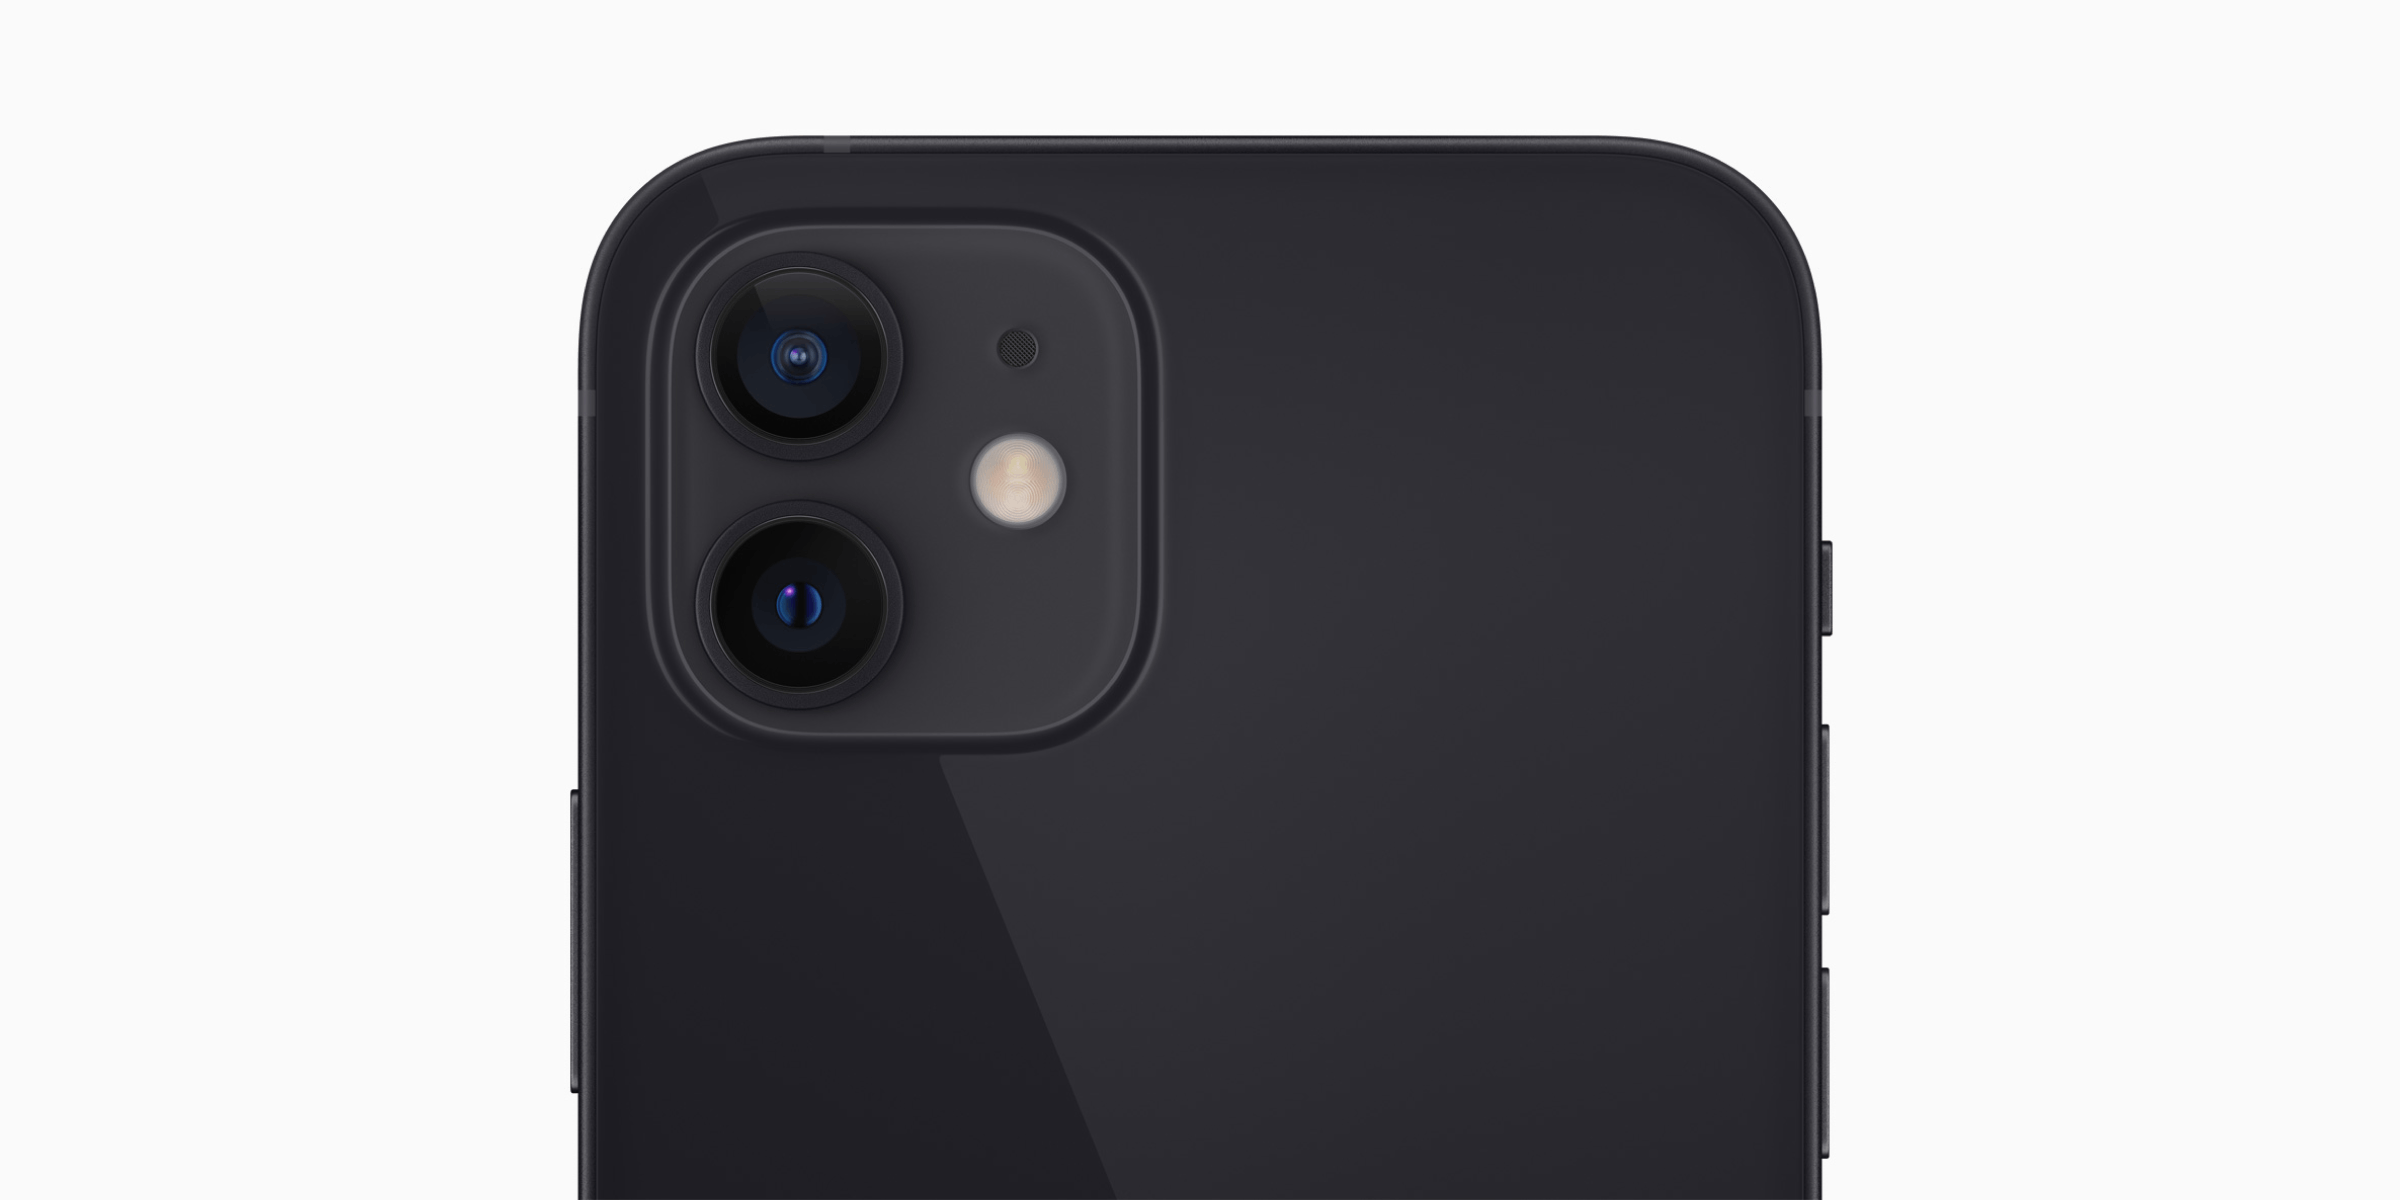 De 2 camera's aan de achterkant van de iPhone 12